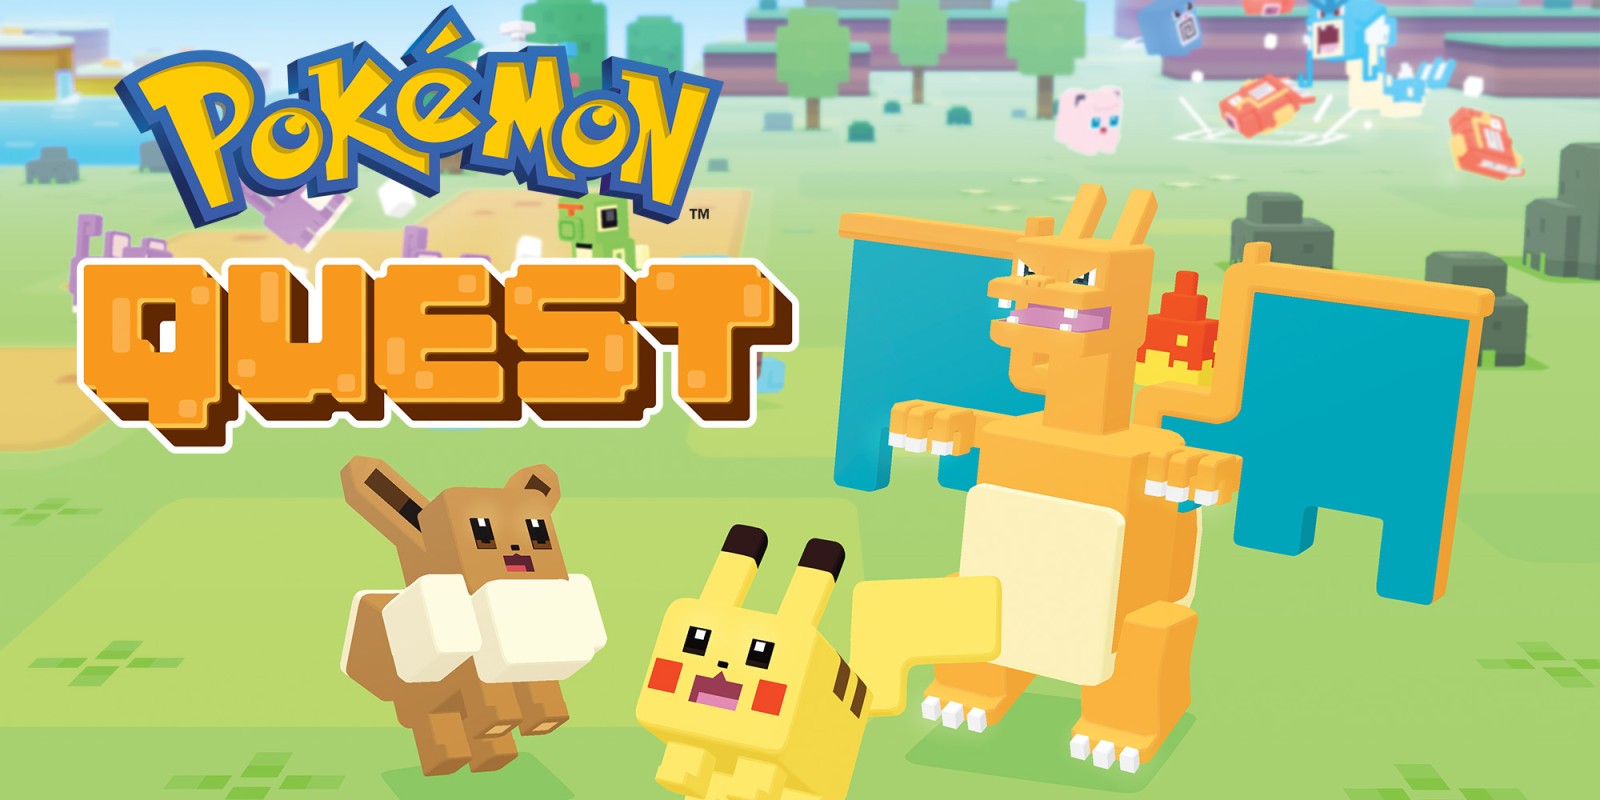 Pokémon Quest gana $ 8 millones en su primer mes en dispositivos móviles